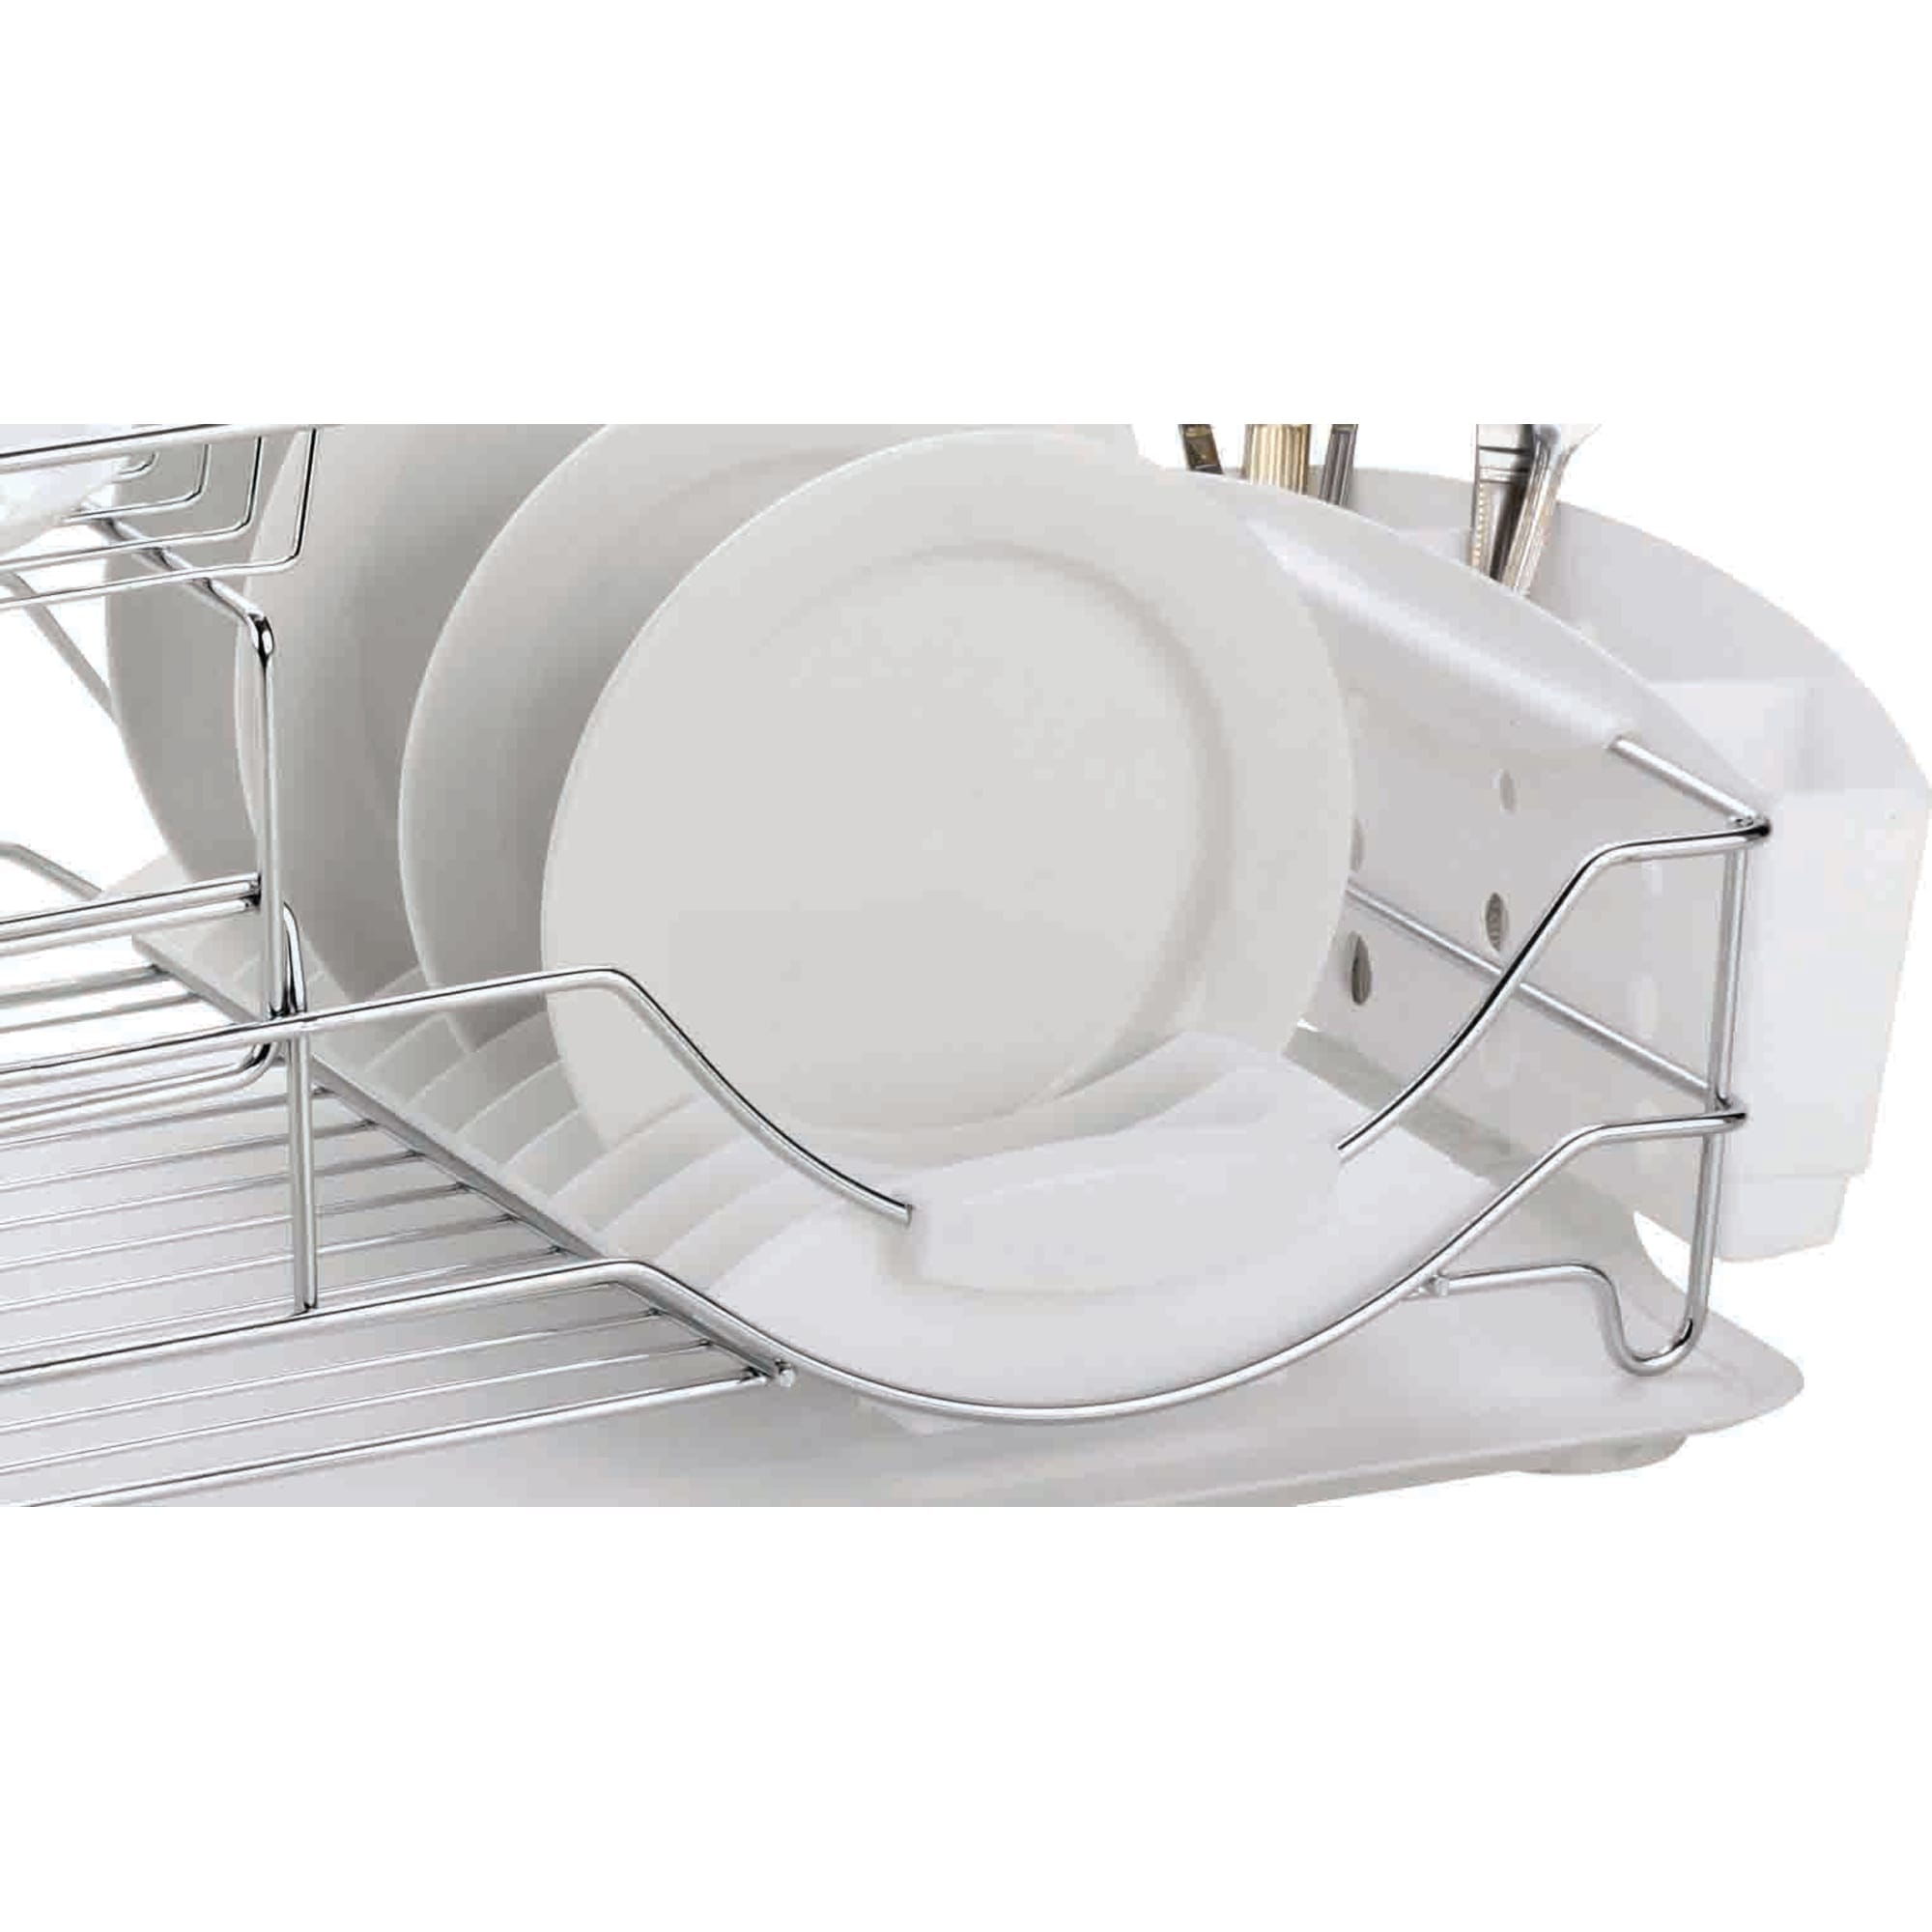 2 Tier Plastic Dish Drainer, White, KITCHEN ORGANIZATION